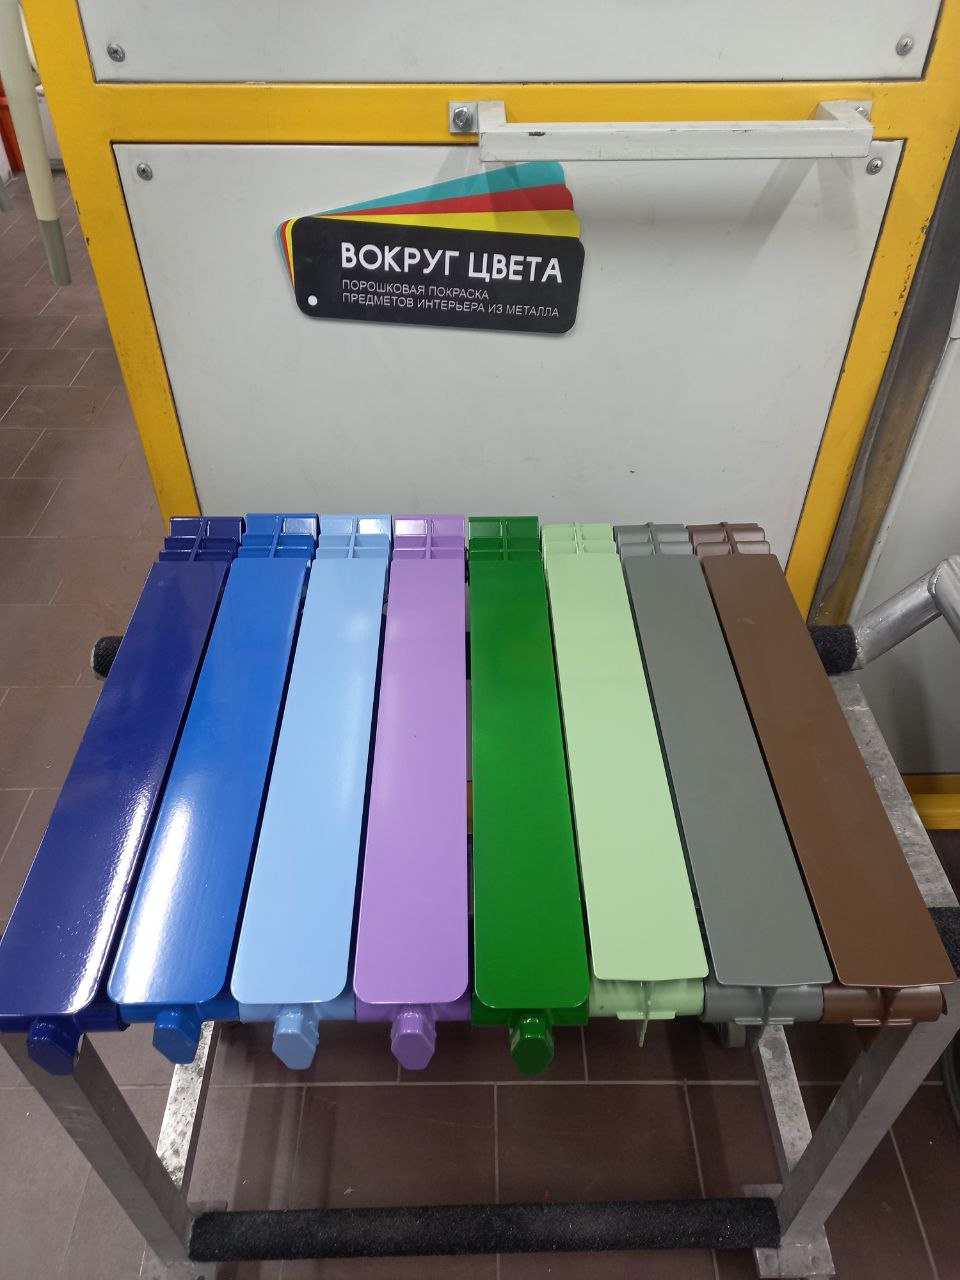 Порошковая покраска радиаторов отопления в разные цвета для нашего партнера